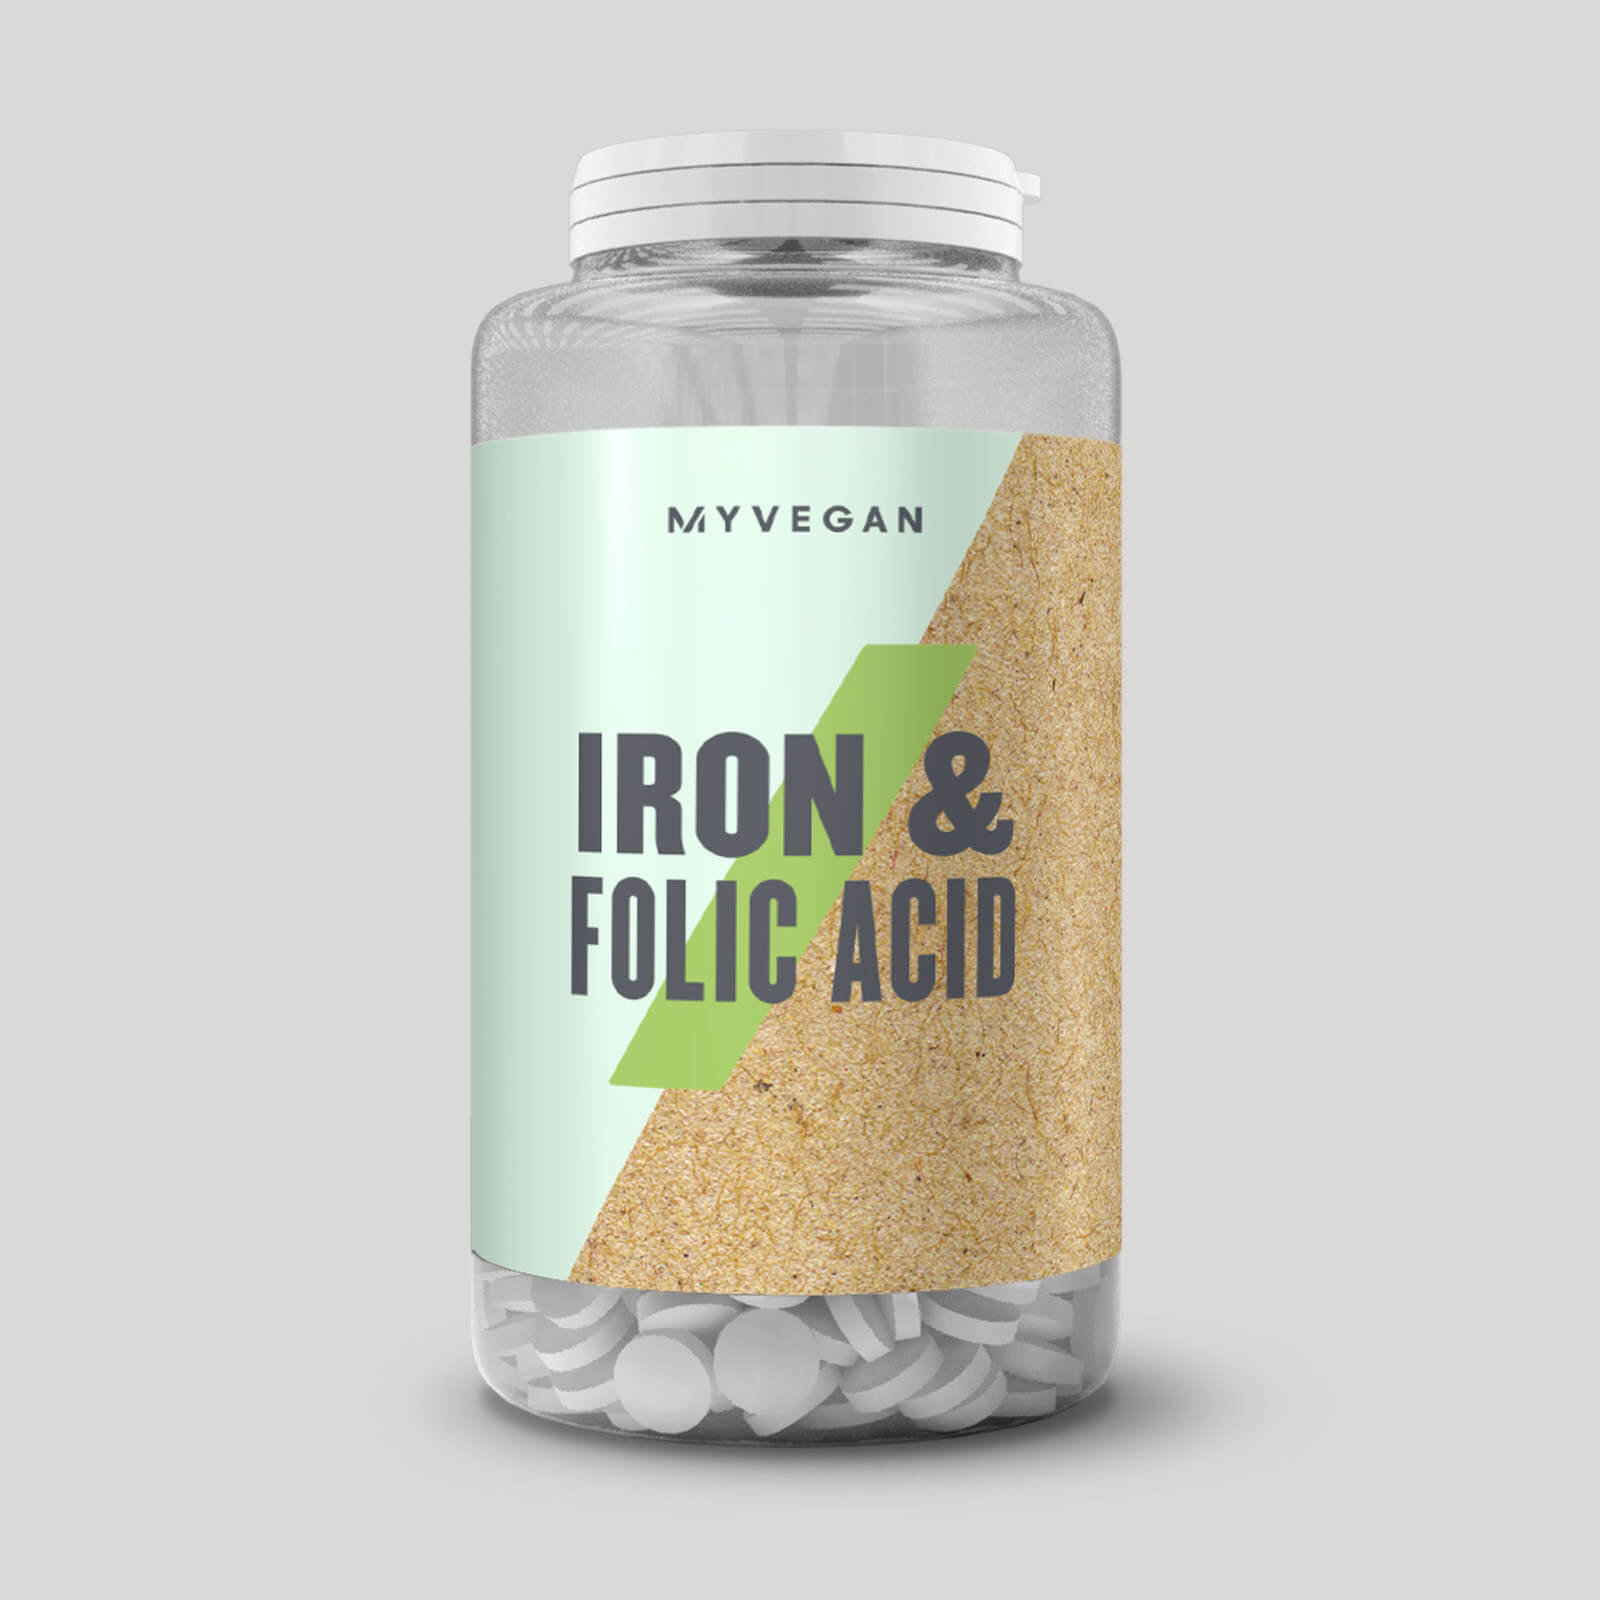 Myvegan Iron & Folic Acid